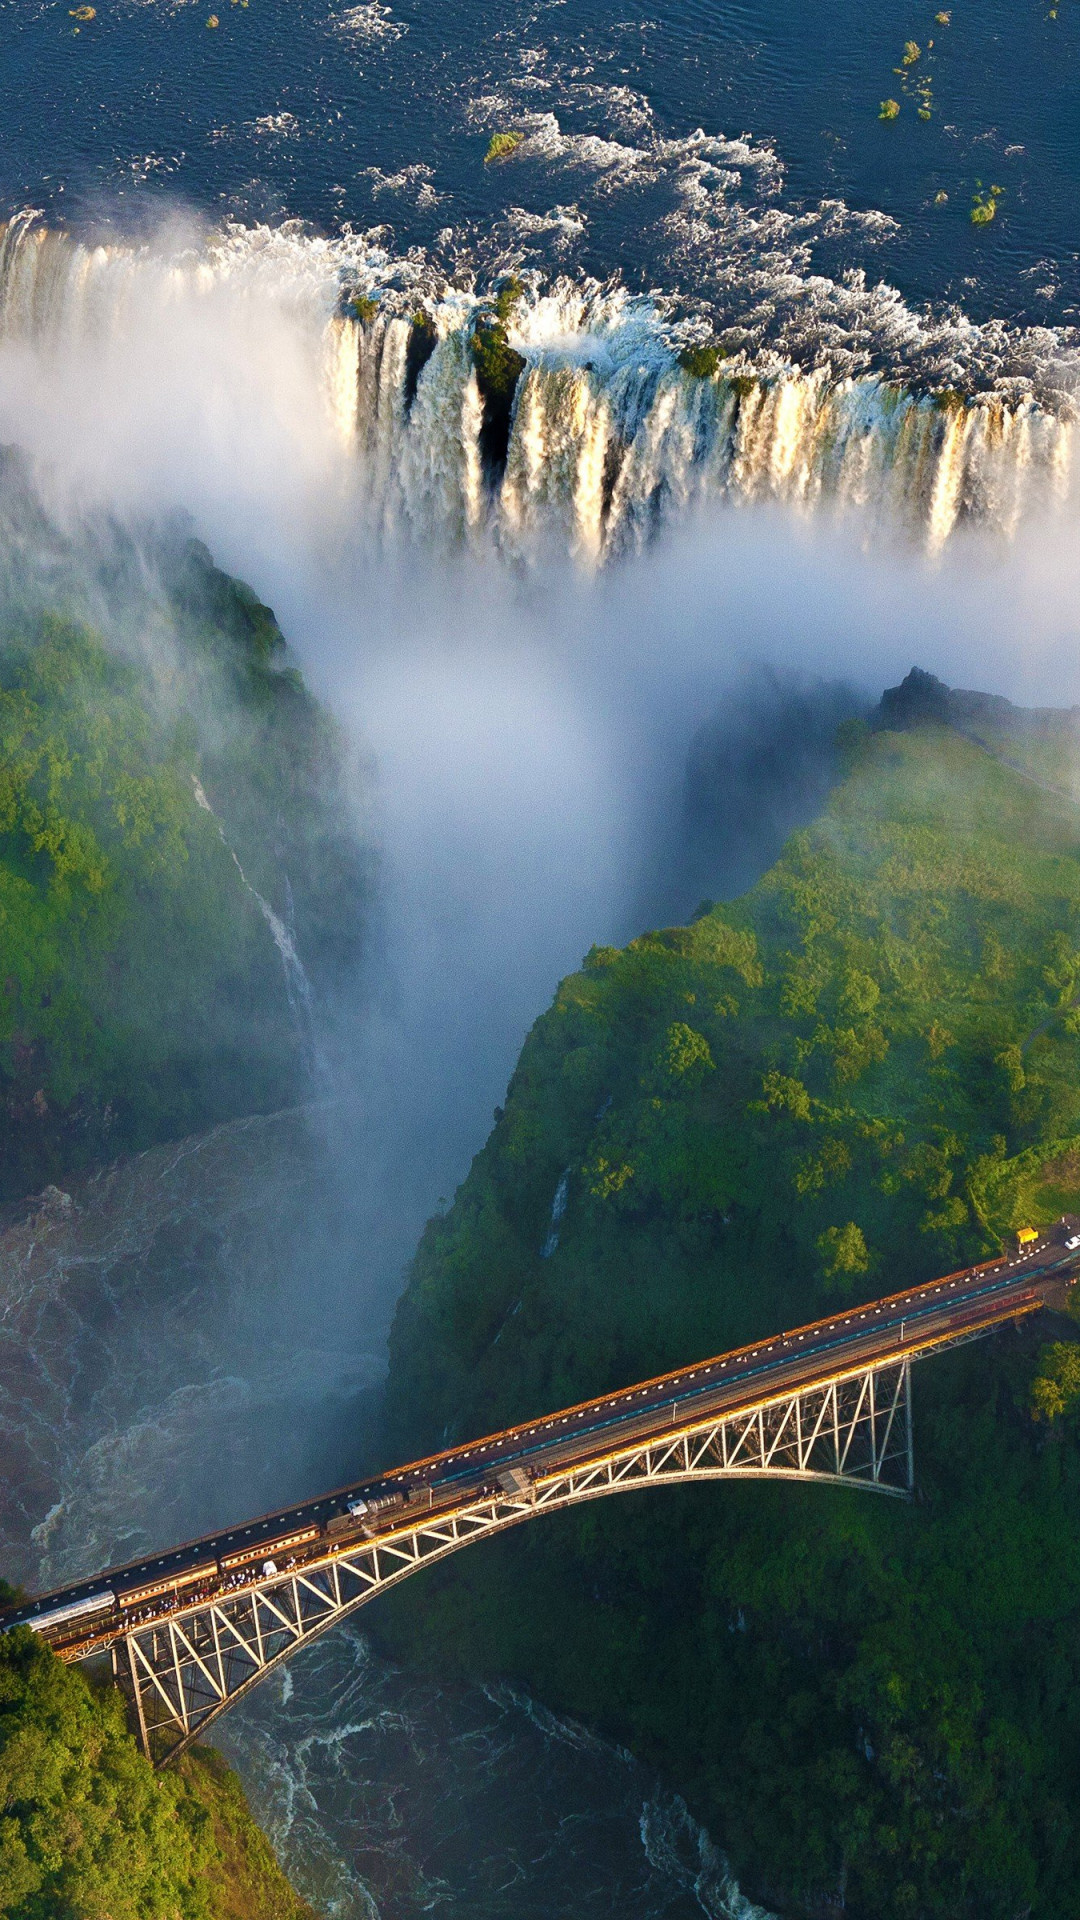 Zambia travels, Zambia waterfall, Nature's beauty, Refreshing scenery, 1080x1920 Full HD Phone